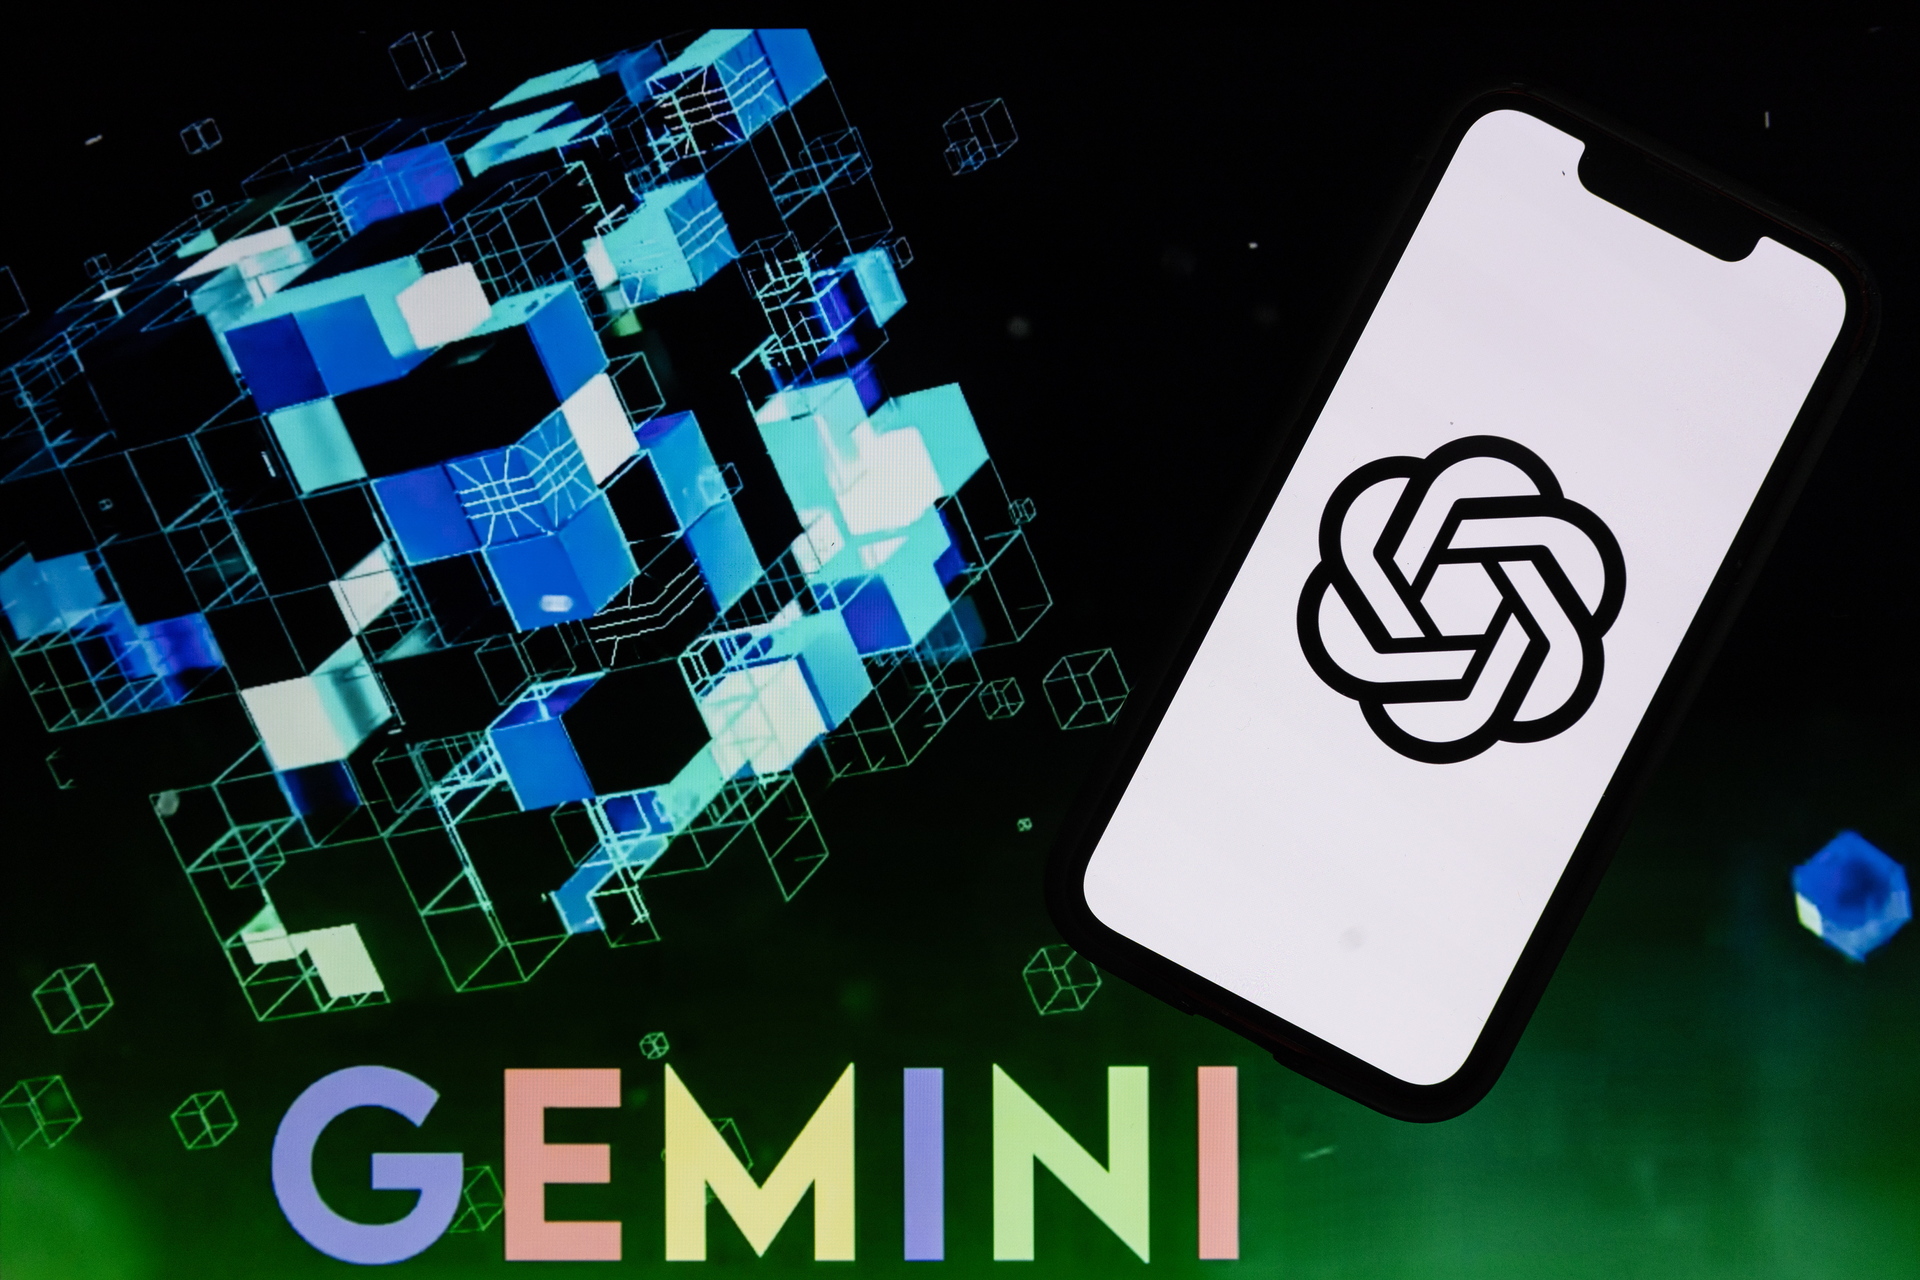 Según Google, Gemini es un chatbot multimodal, ya que es capaz de 'razonar con fluidez mediante textos, imágenes, video, audio y códigos'. 